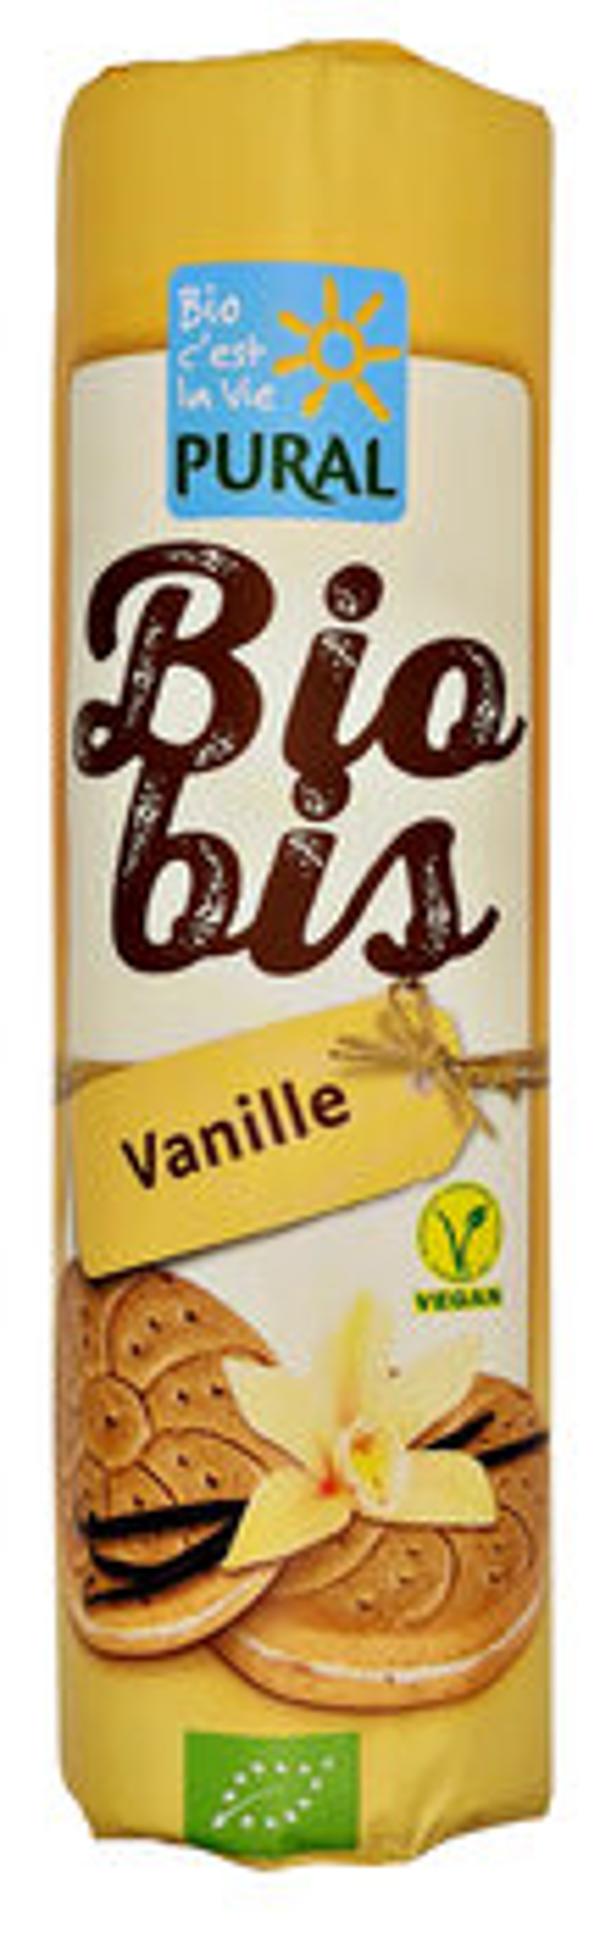 Produktfoto zu Biobis Vanille Doppelkekse, 300 g